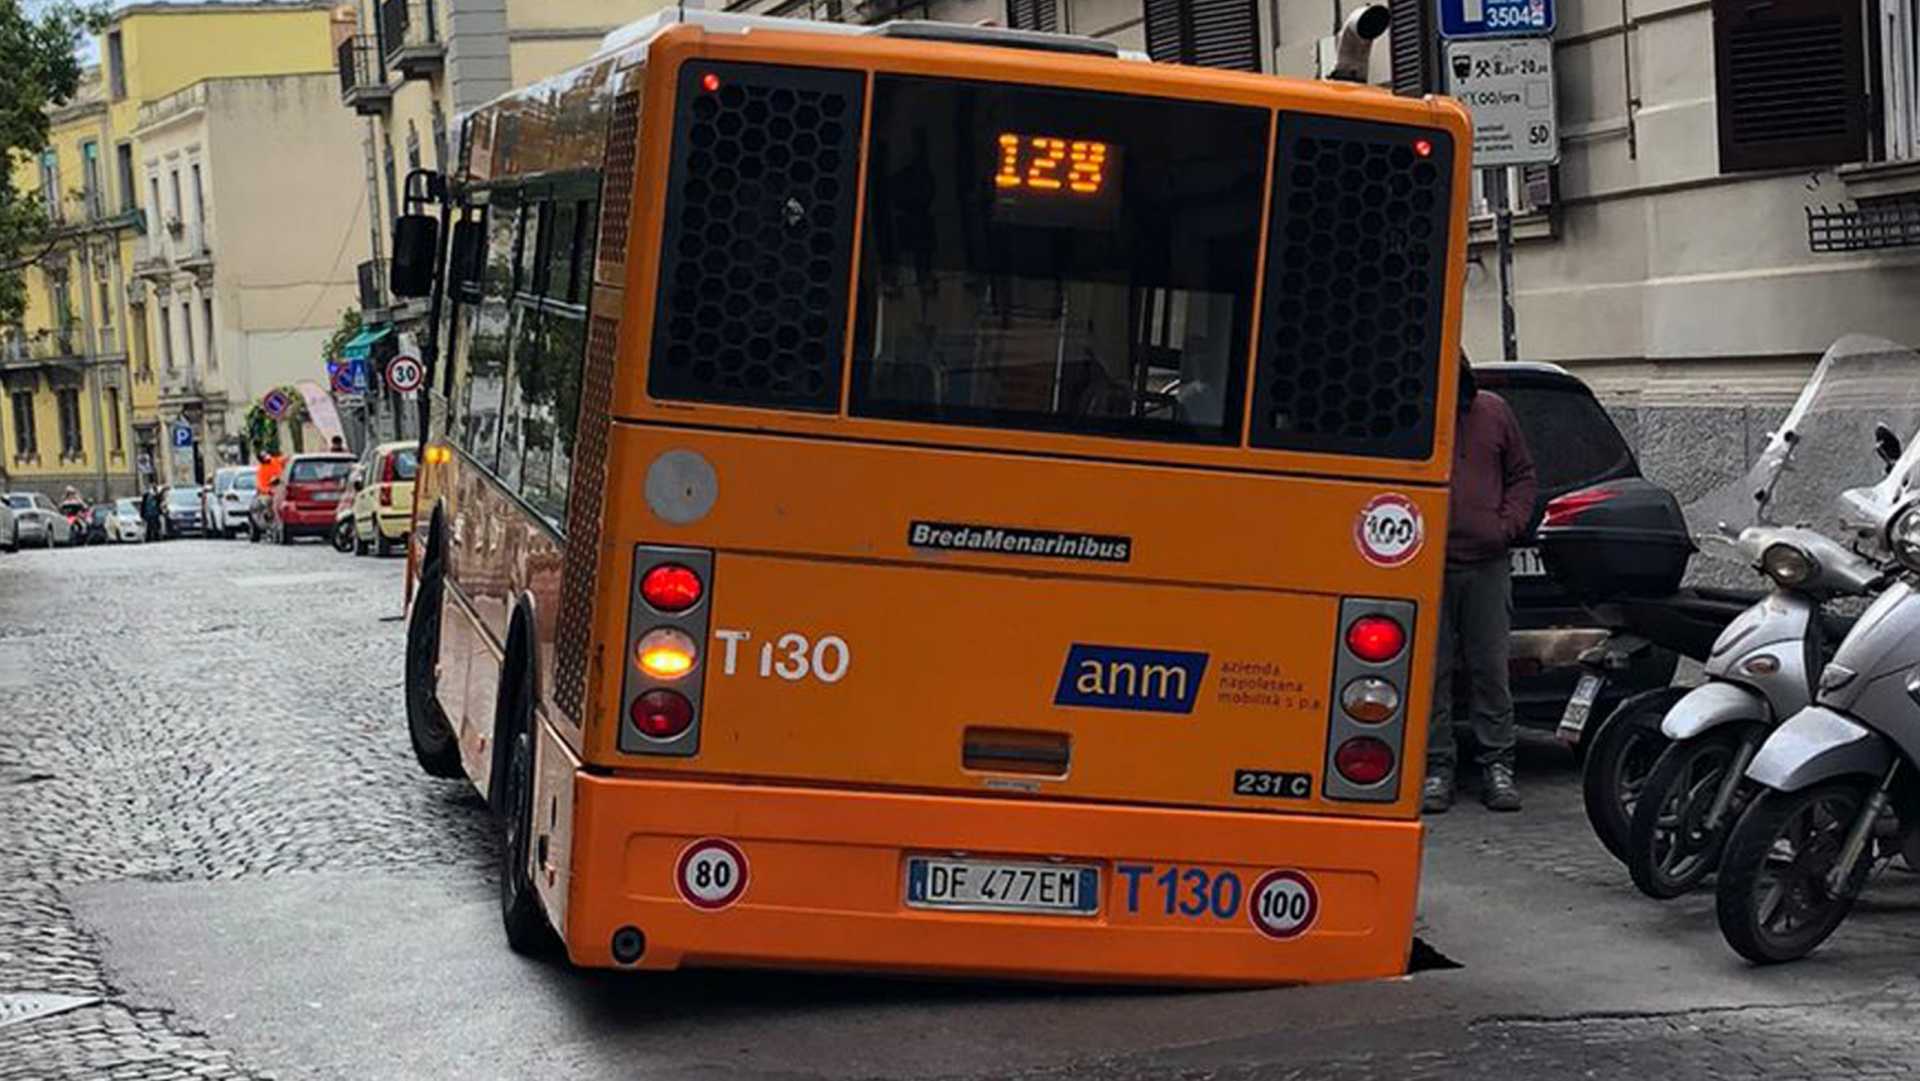 Bus Anm sprofonda in una voragine: paura a Napoli